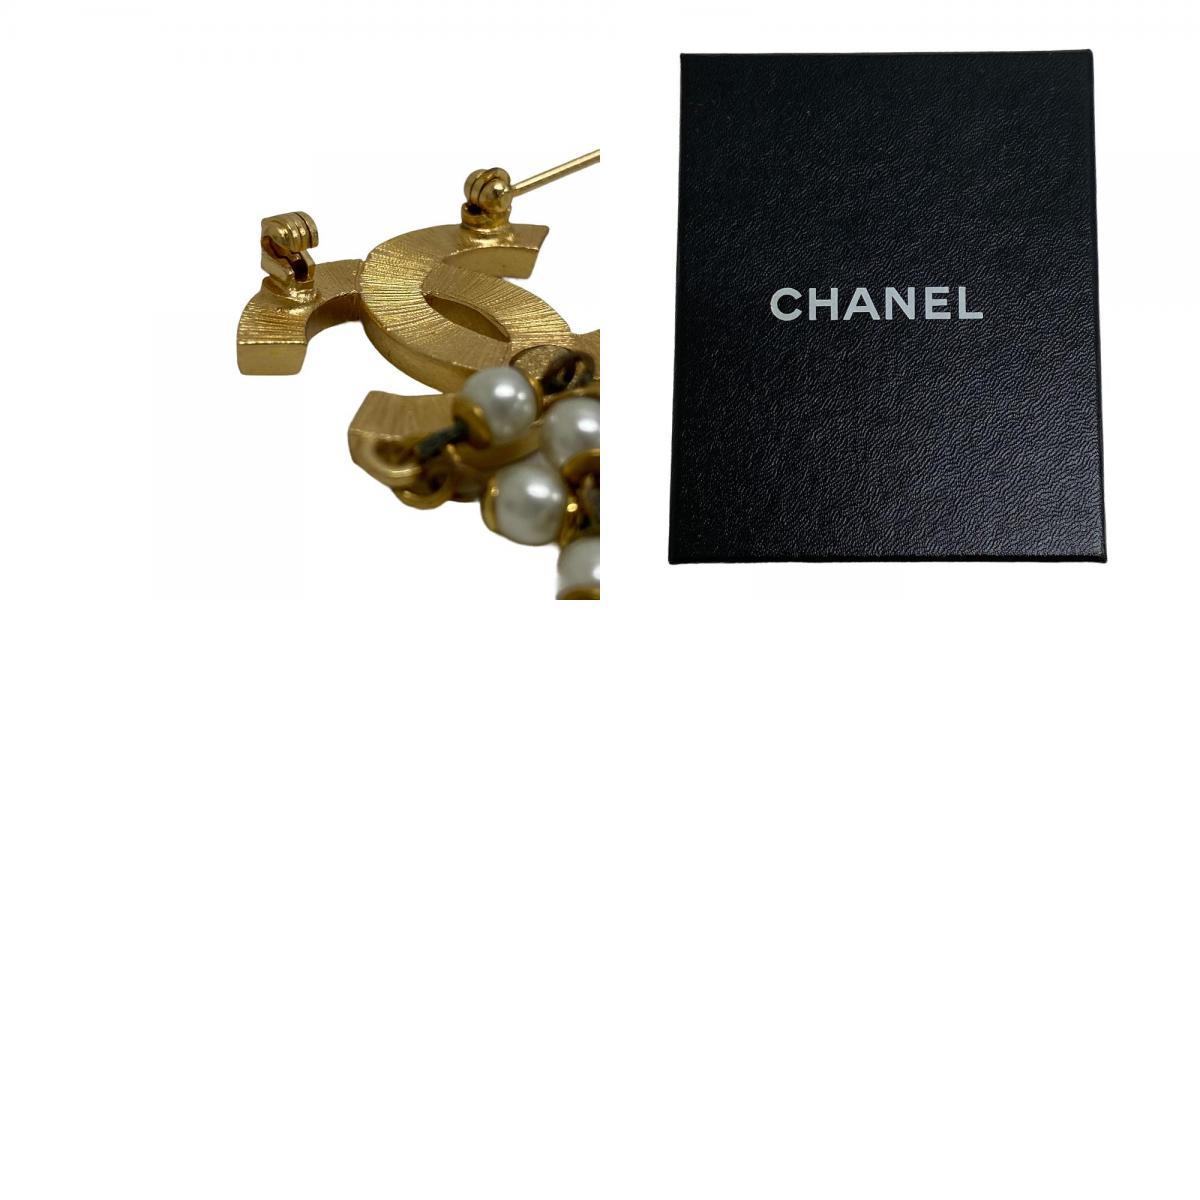 CHANEL/ Chanel поддельный жемчуг 01P здесь Mark стразы брошь Gold женский бренд 